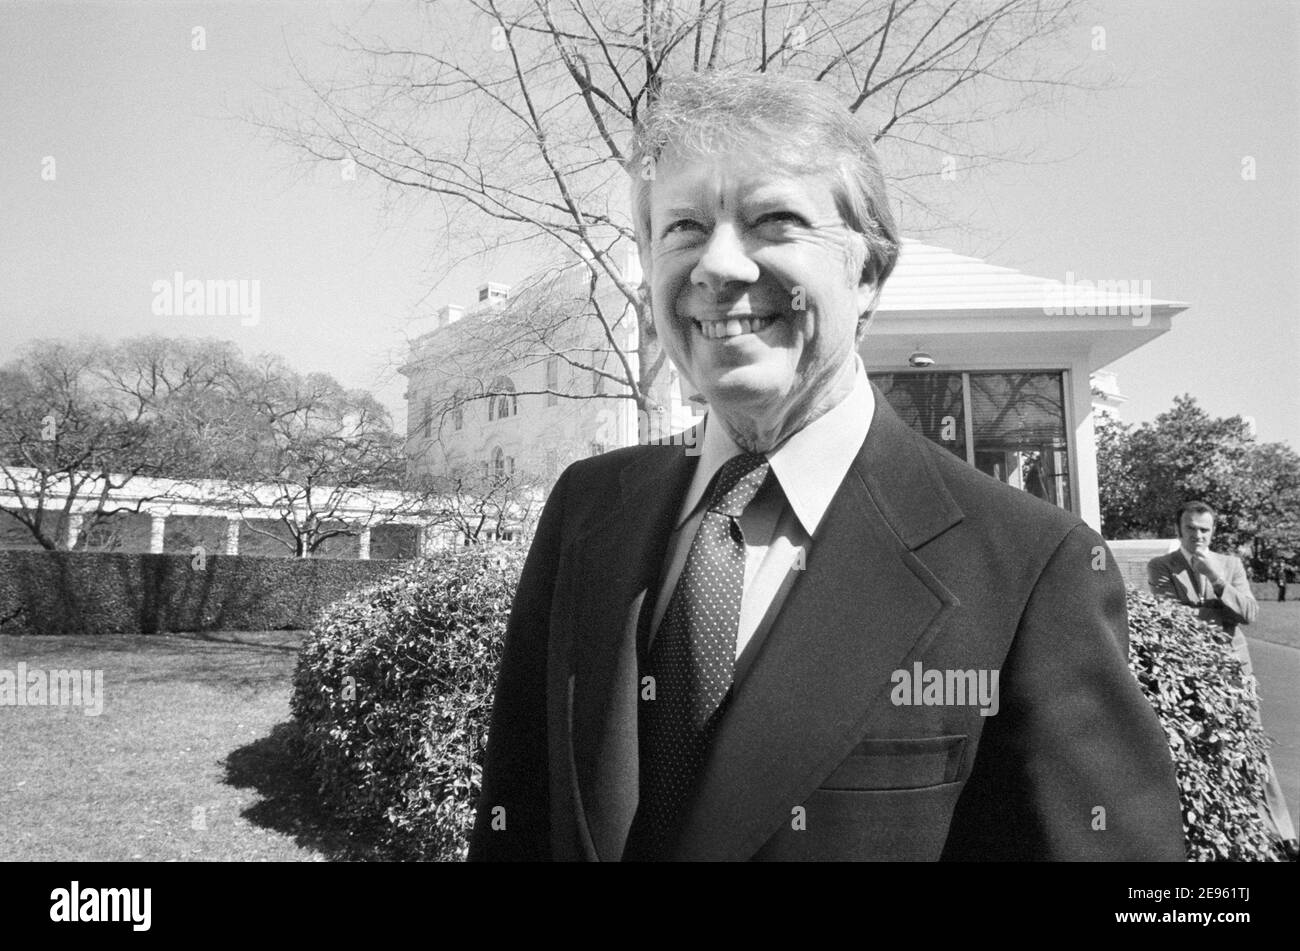 Presidente de EE.UU. Jimmy Carter, Retrato de media duración en la Casa Blanca, Washington, D.C., EE.UU., Marion S. Trikosko, 8 de marzo de 1977 Foto de stock